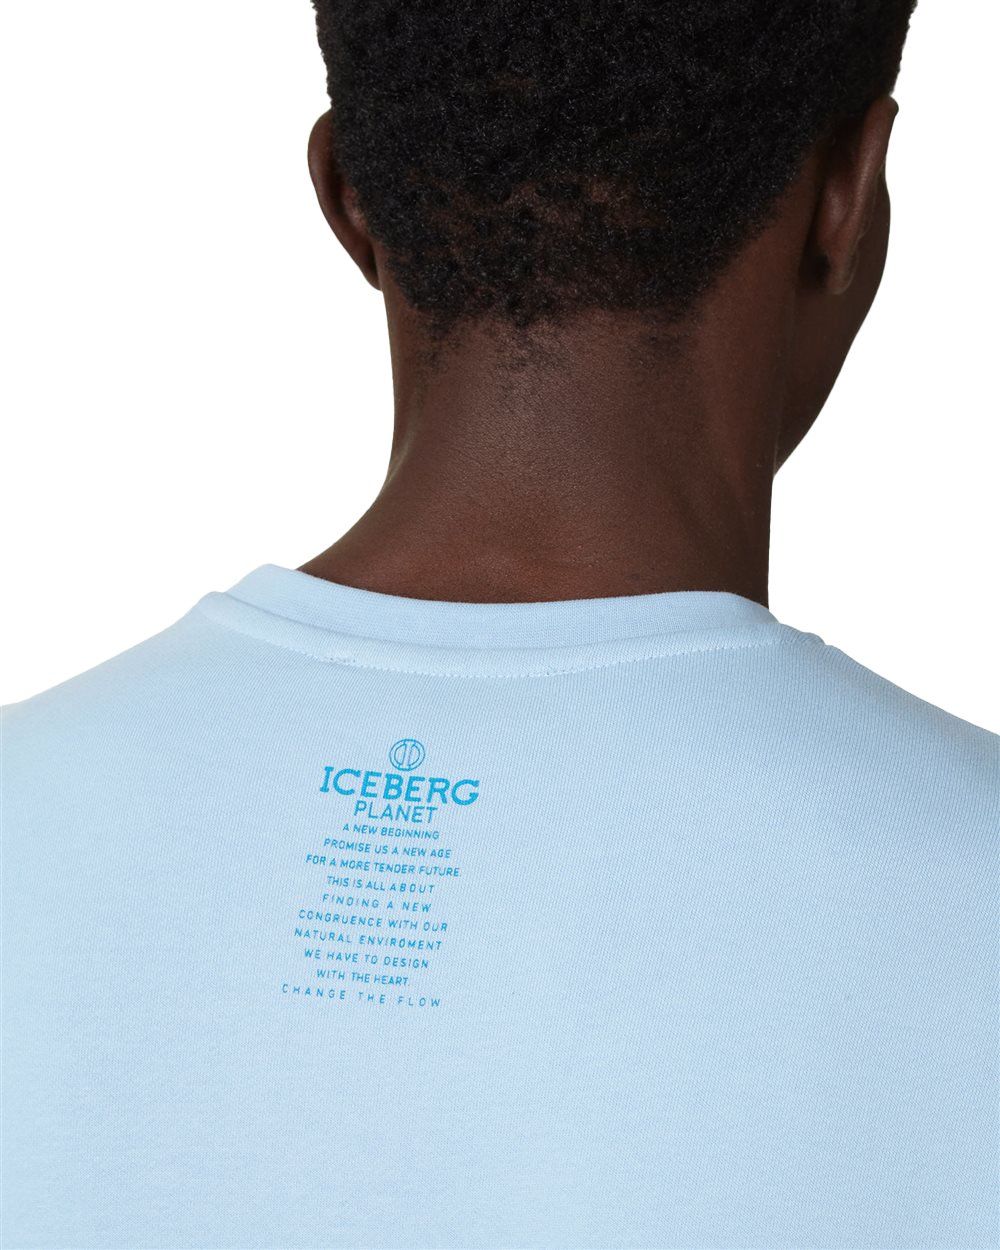 Iceberg Sweatshirt with logo Blauw